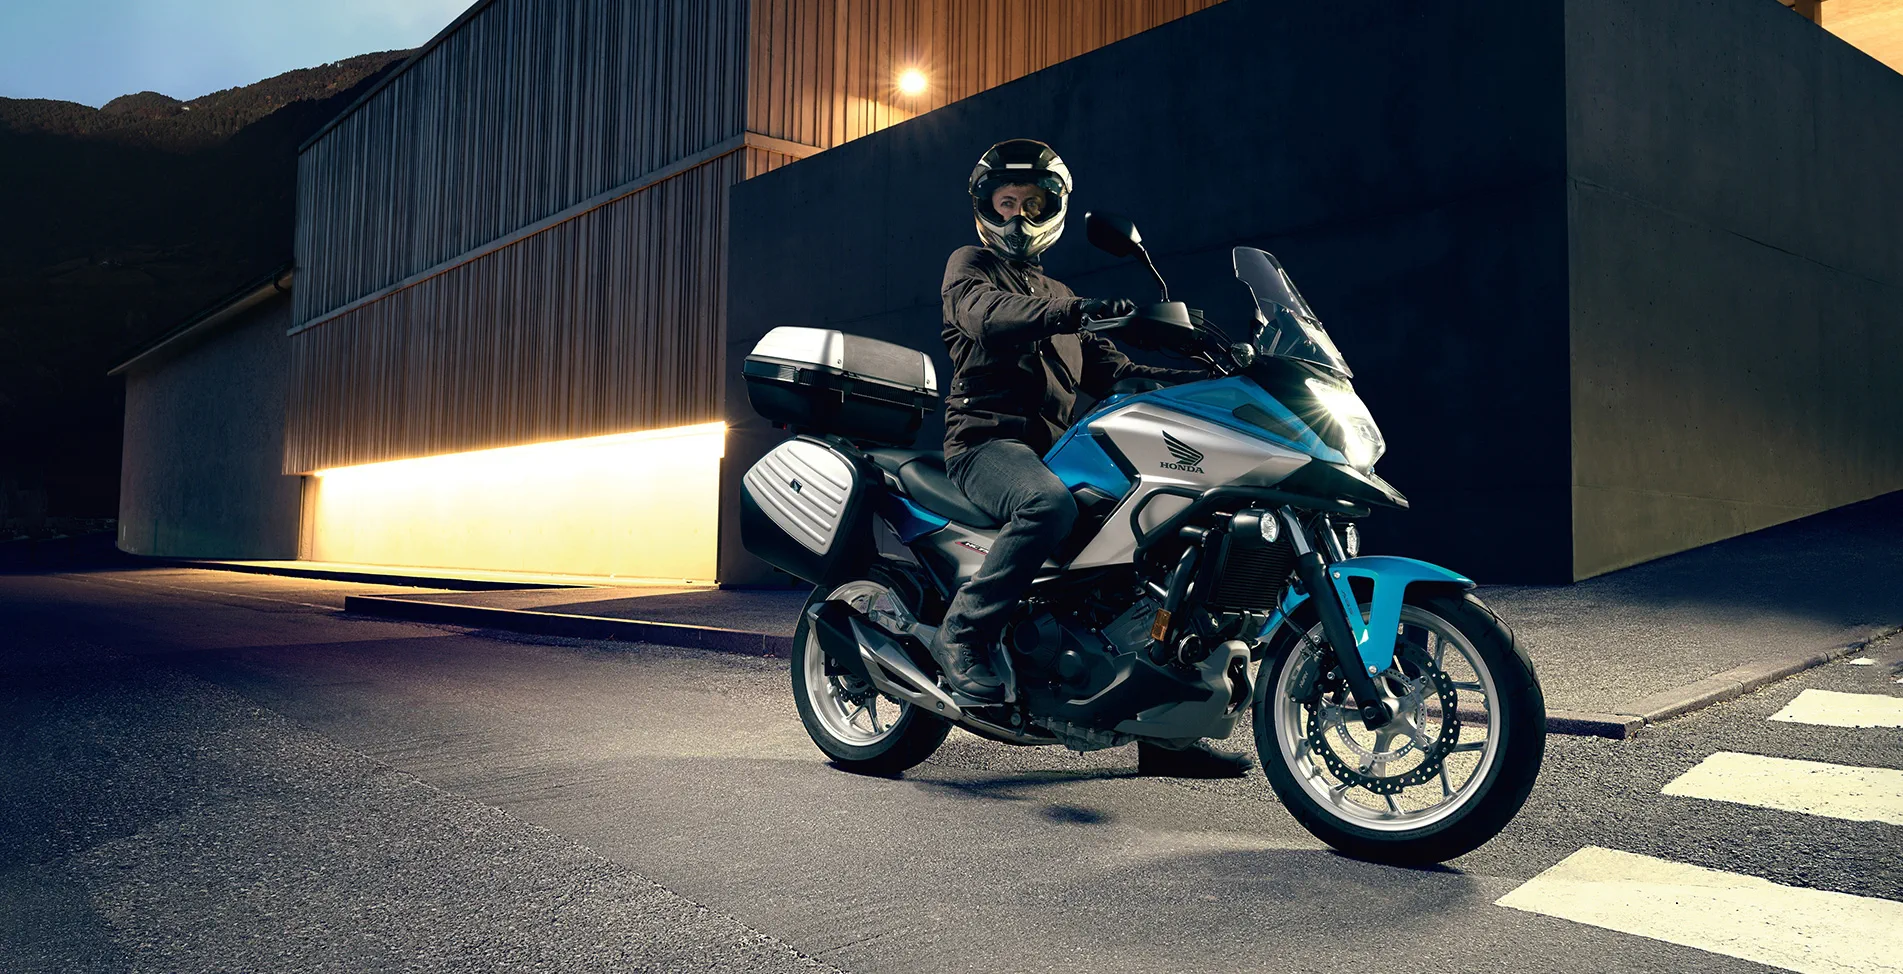 Honda (хонда) nc 750 xd — мотоцикл с удивительными ходовыми качествами